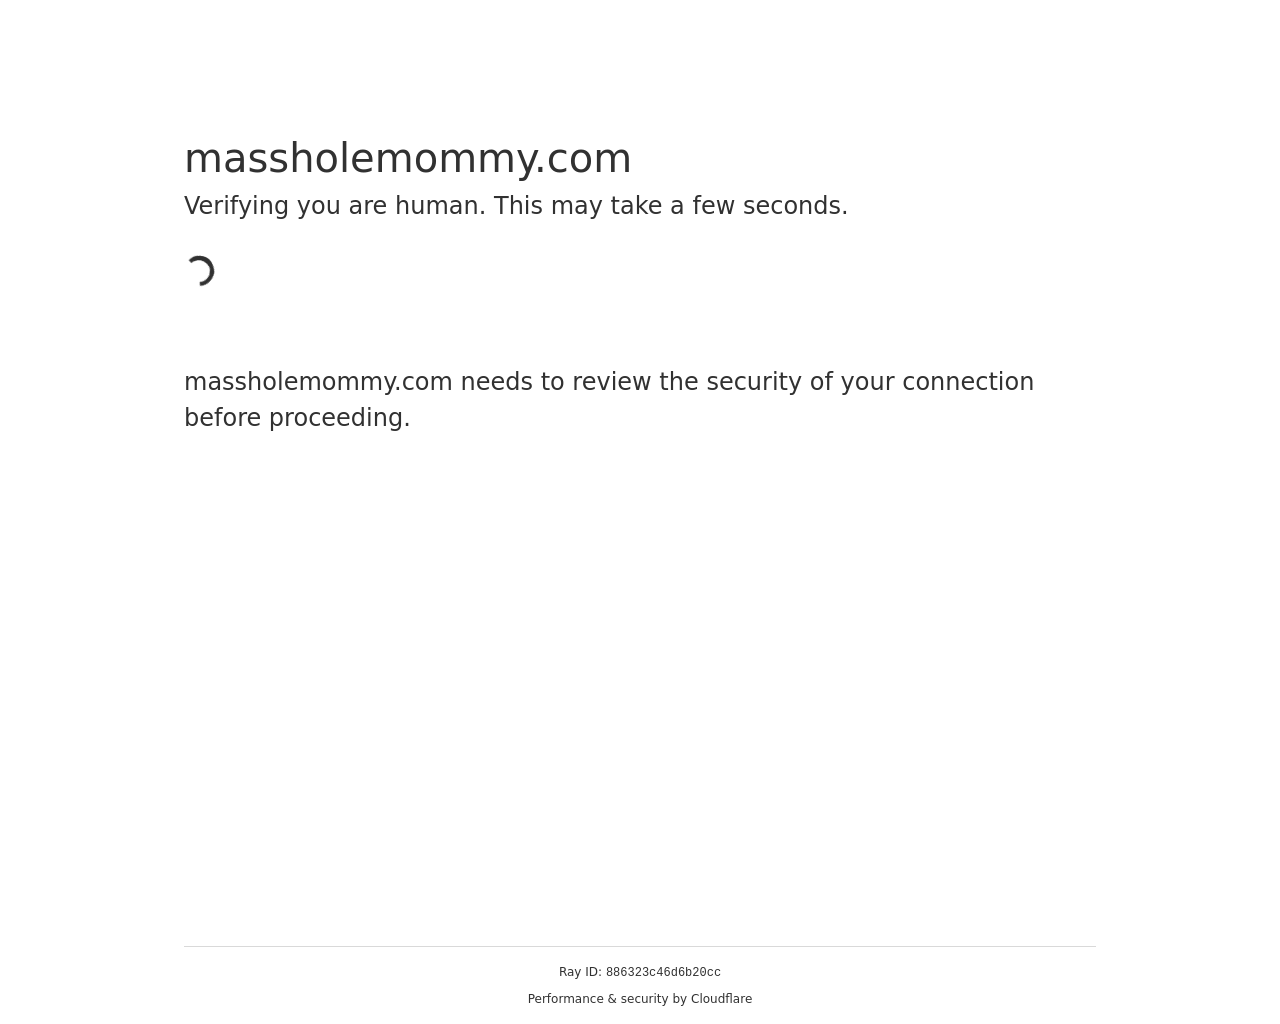 massholemommy.com